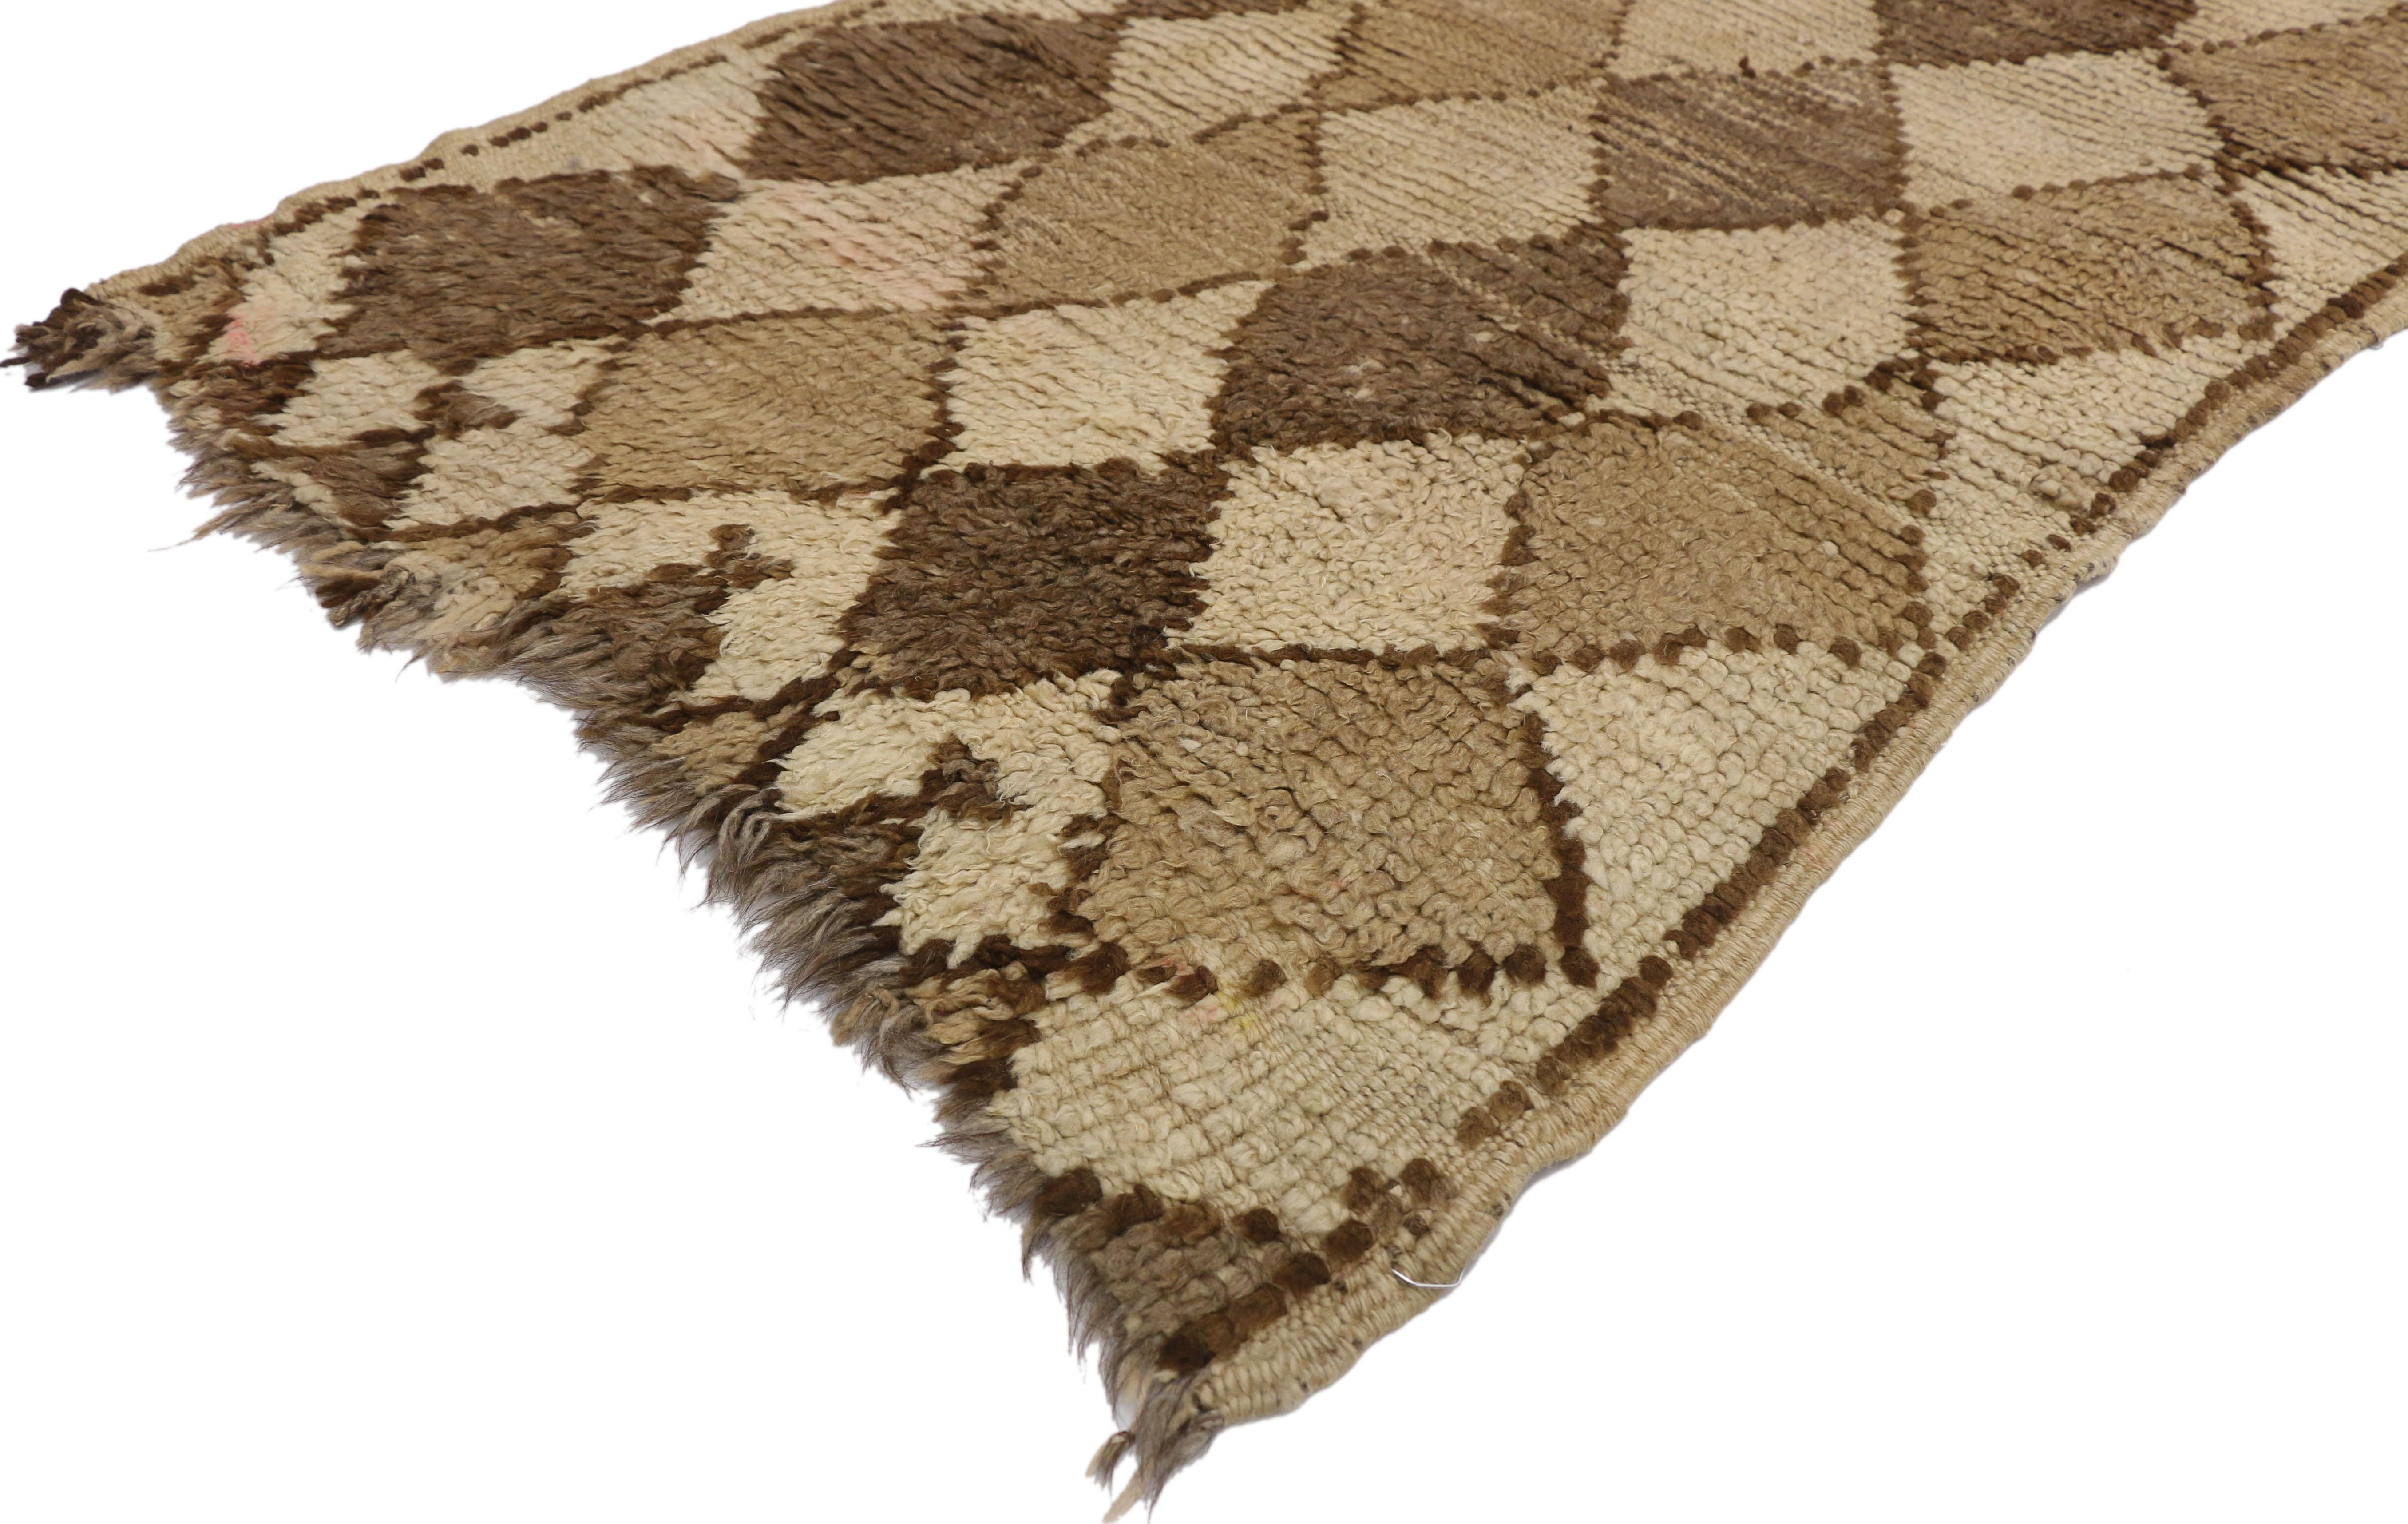 20878, klassischer marokkanischer Berberteppich mit Stammesmotiven in neutralen Farben. Dieser marokkanische Vintage-Teppich im Stammesstil zeigt ein durchgehendes Rautengittermuster in wechselnden Farben, das sich in der Mitte eines cremefarbenen